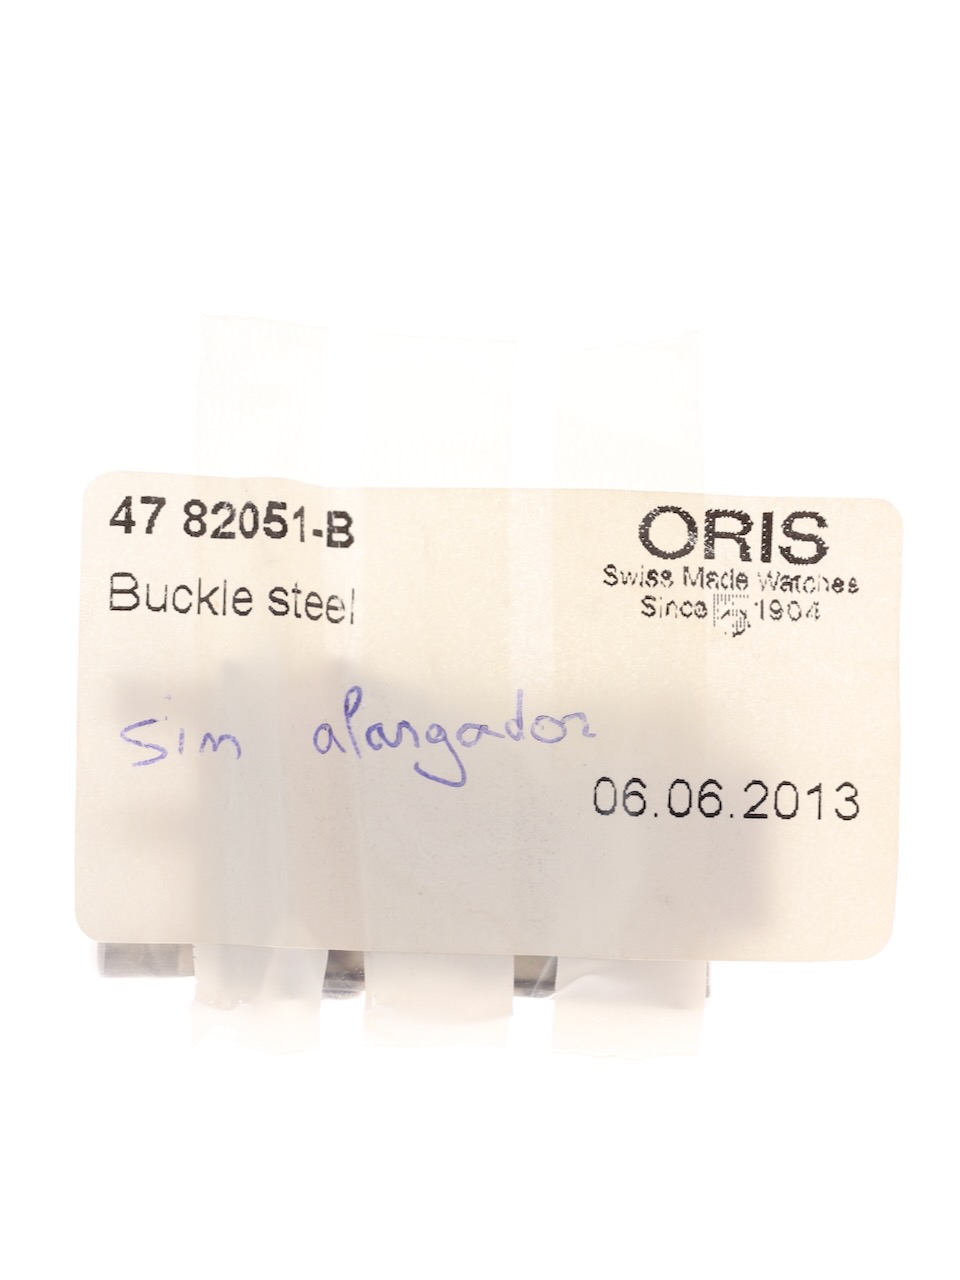 Oris Ref. 47 82051-B Steel NOS 2010s